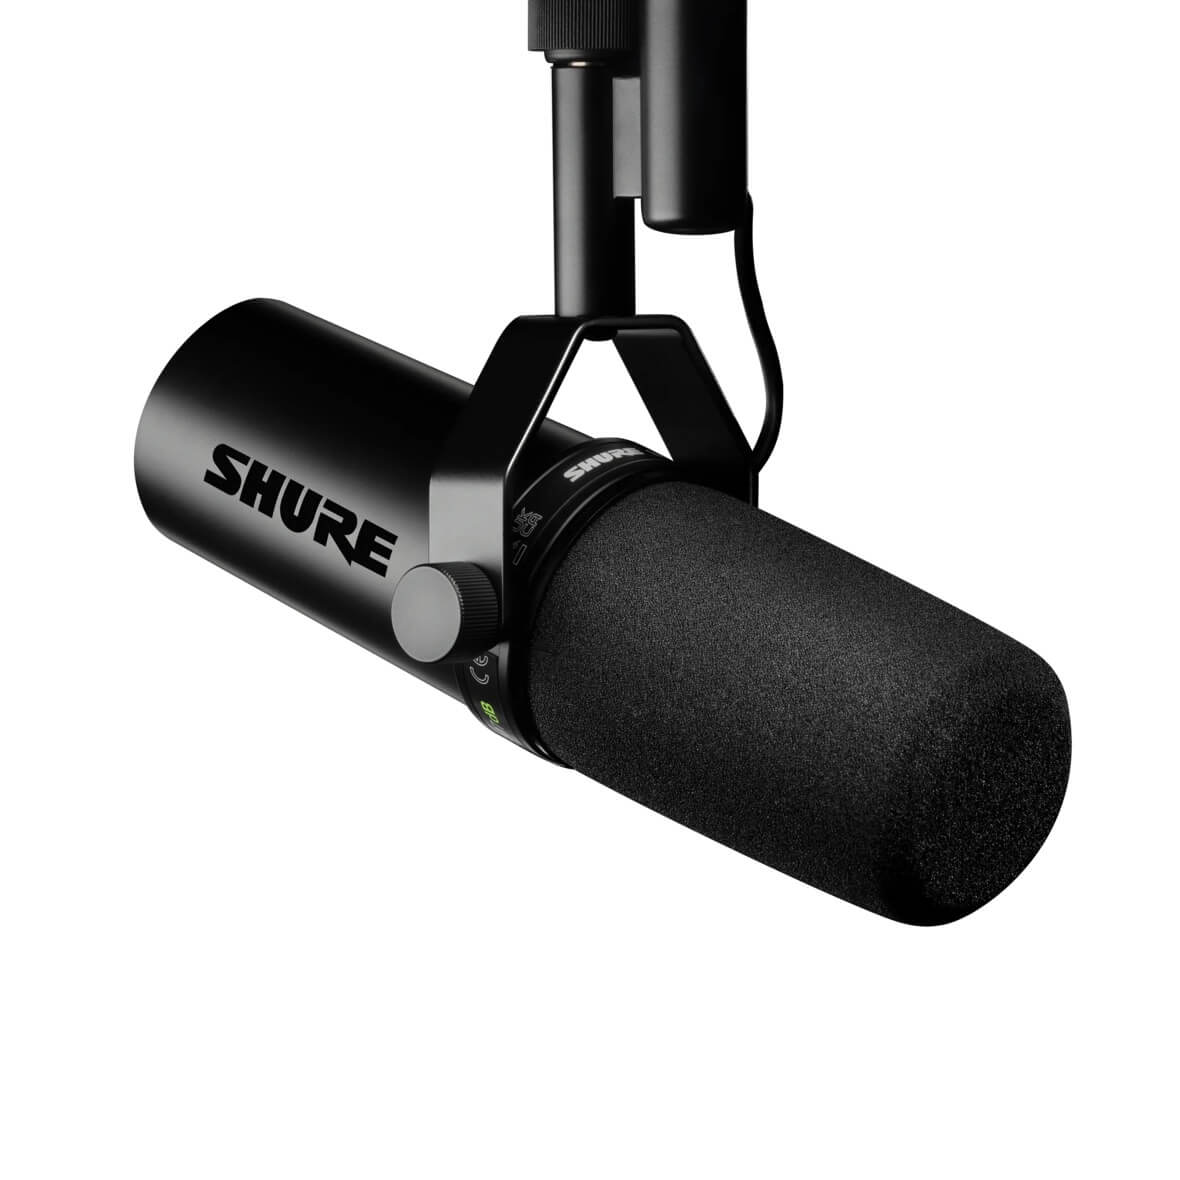 Shure MV7 -Podcasting Microphone! - Springtree Media